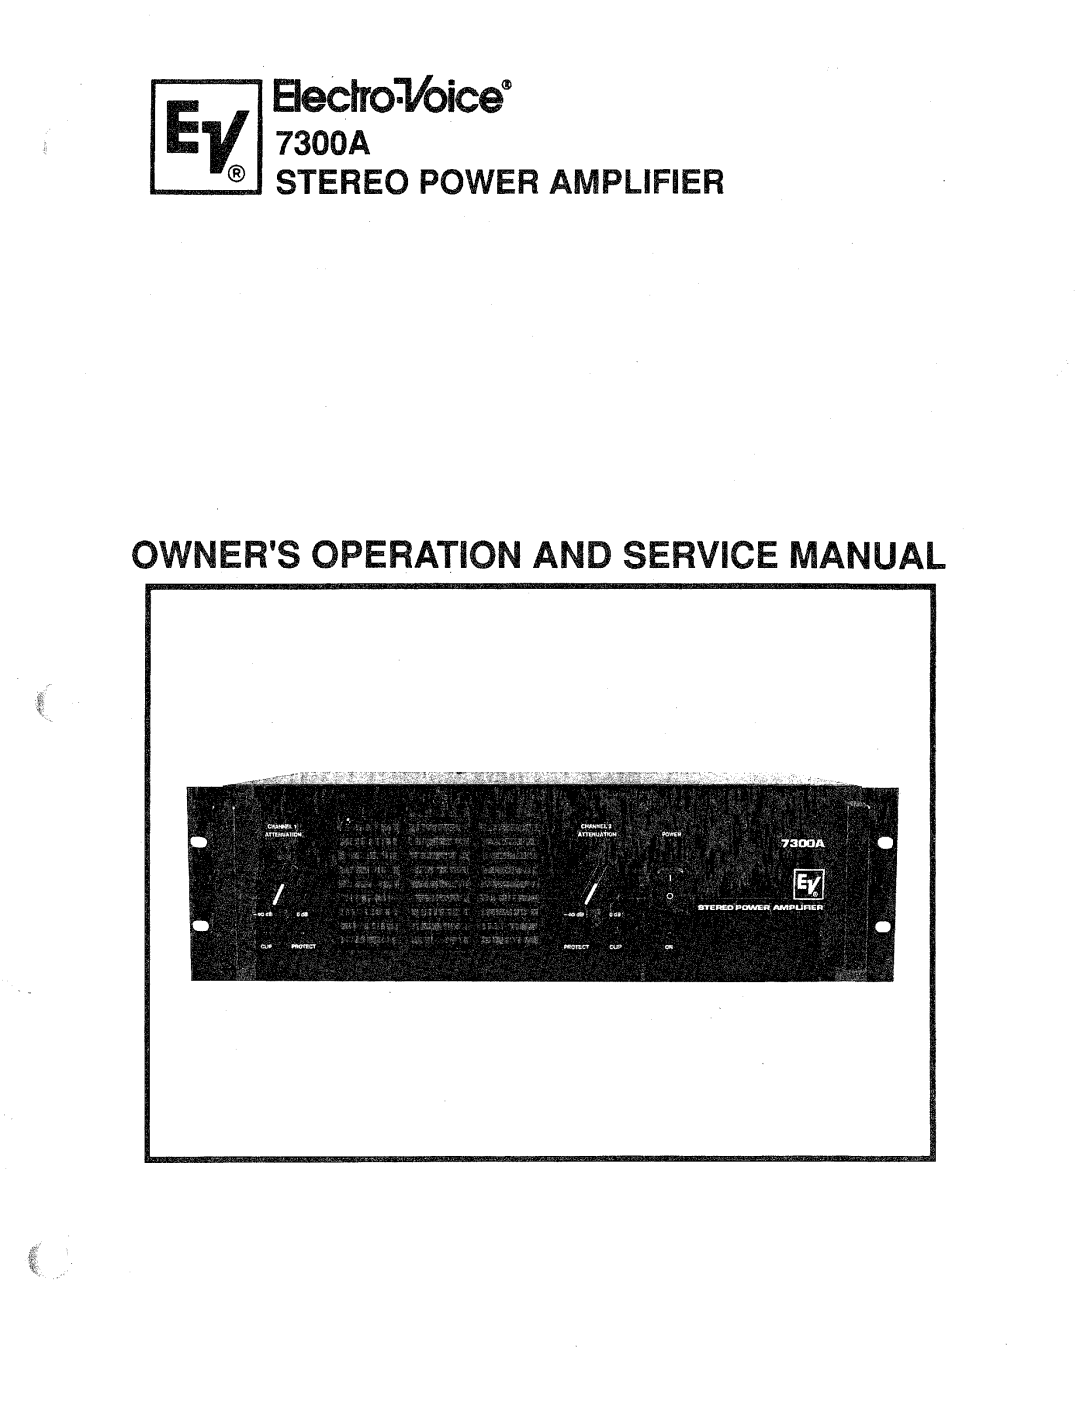 Electro-Voice 7300A manual 